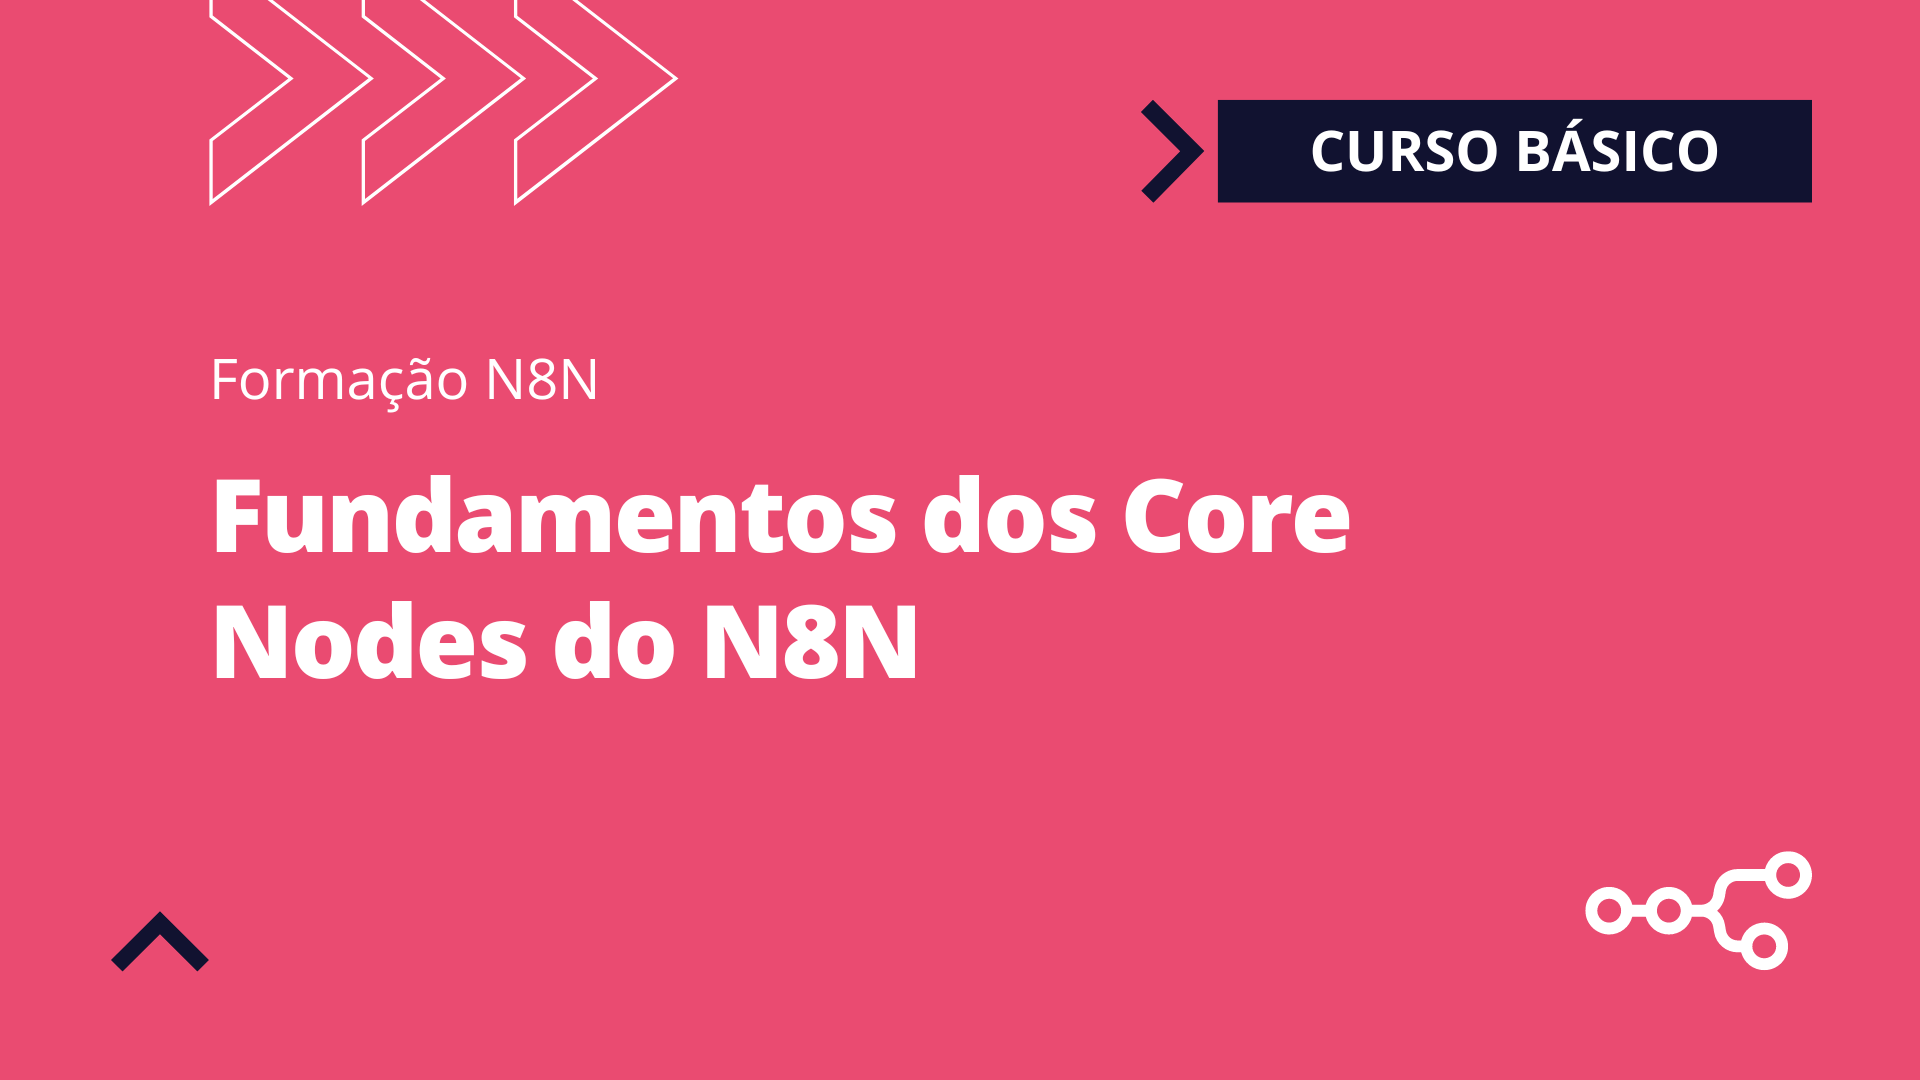 Fundamentos dos Core Nodes do N8N